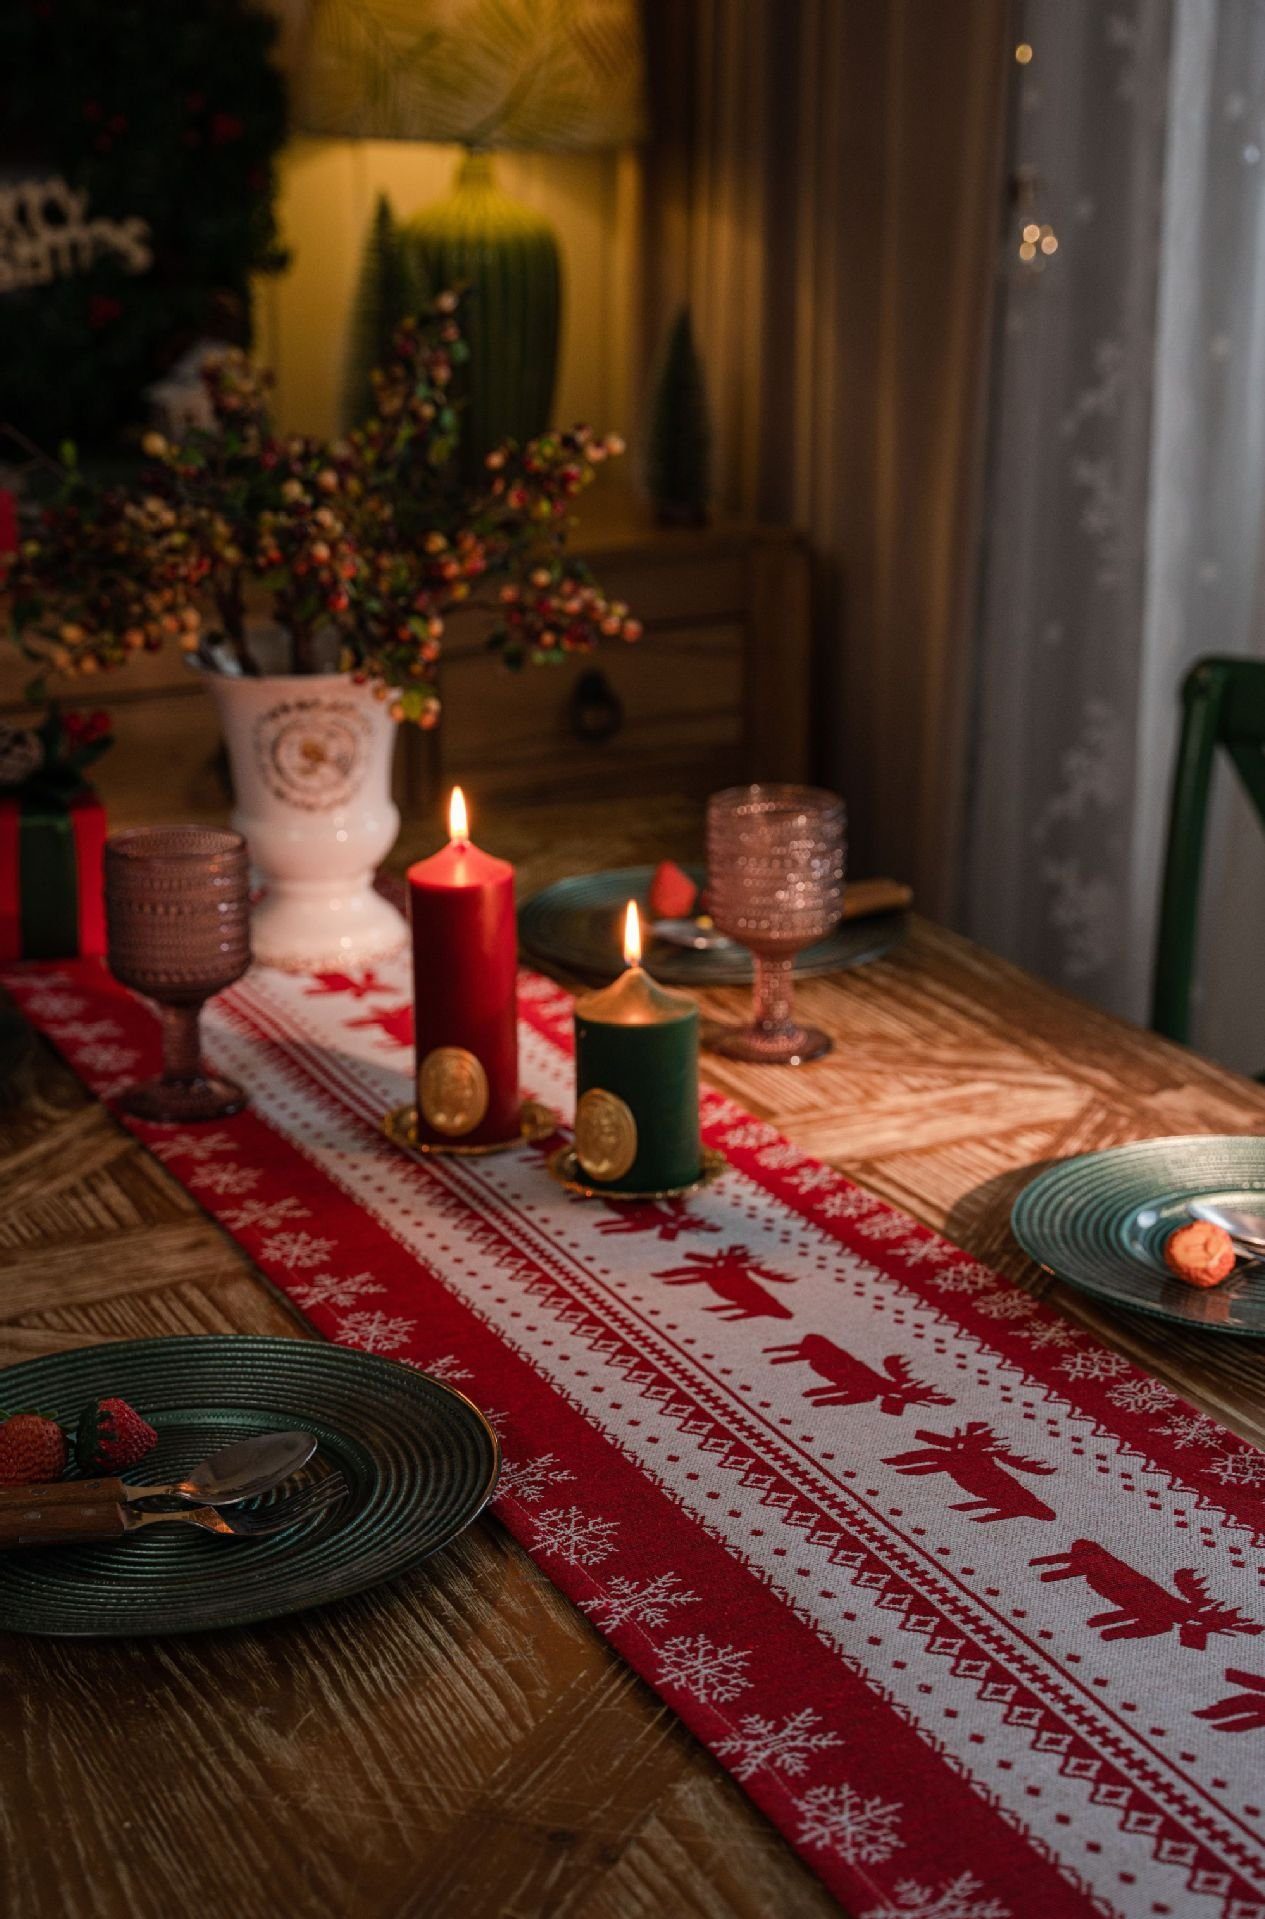 HIBNOPN Tischläufer Tischläufer Weihnachten Rentier für Dekoration 35x180 Esstisch cm Elch